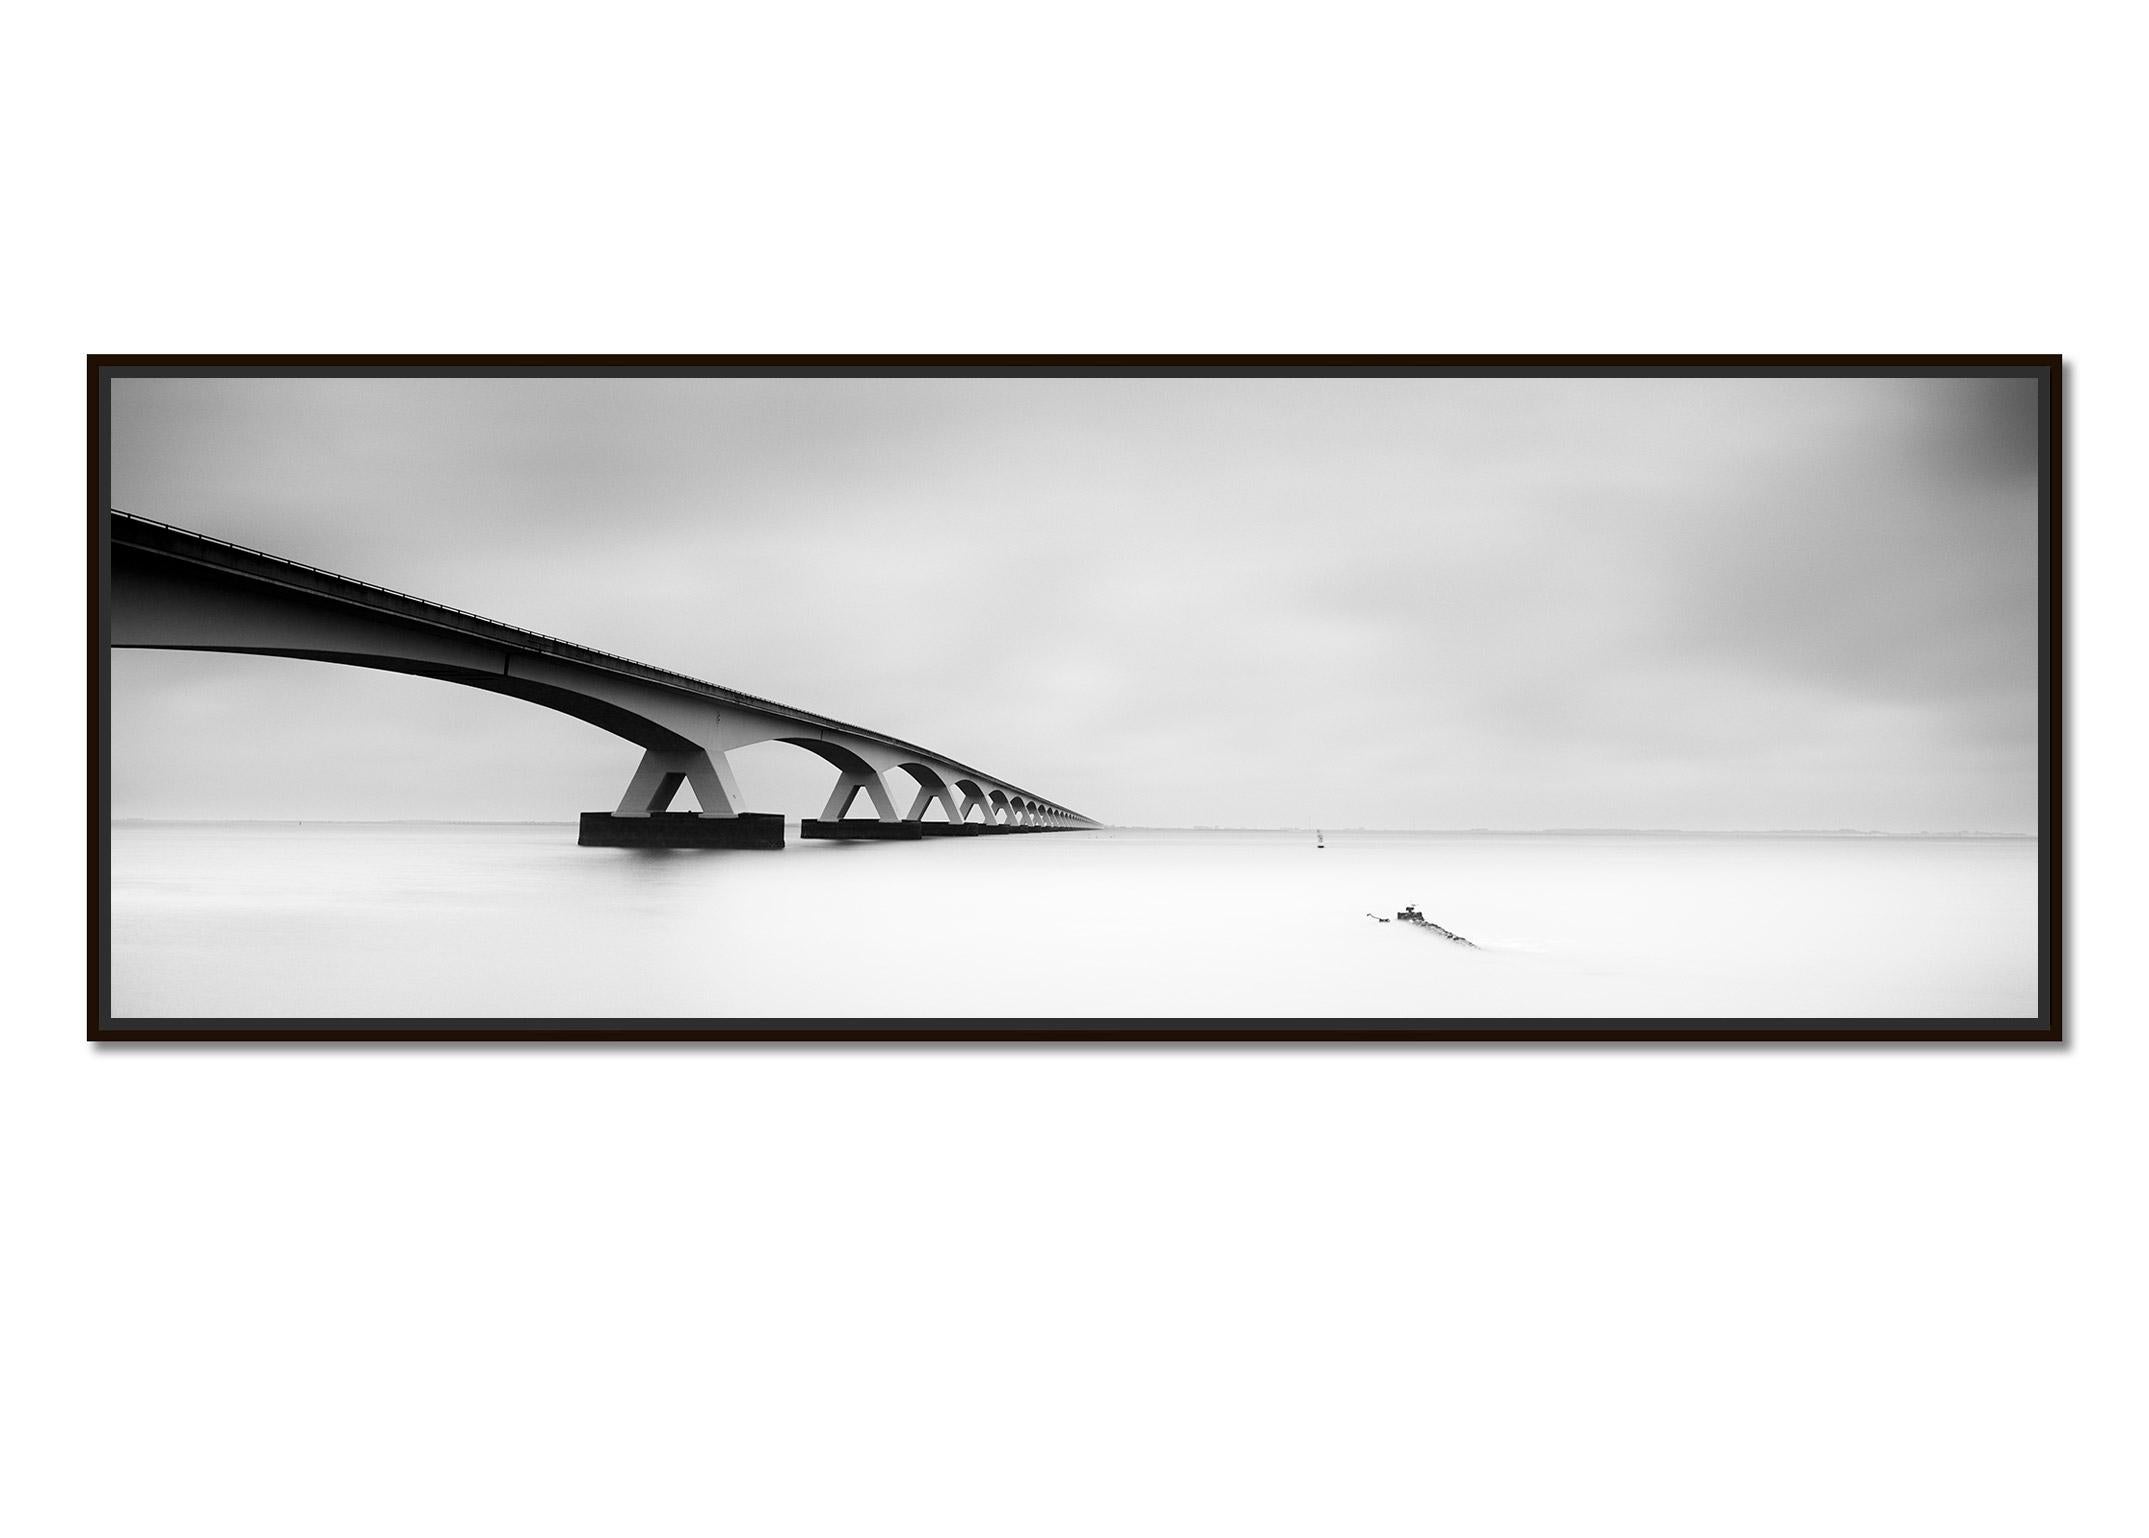 Panorama du pont de Zélande, Pays-Bas, photographies de paysages aquatiques en noir et blanc - Photograph de Gerald Berghammer